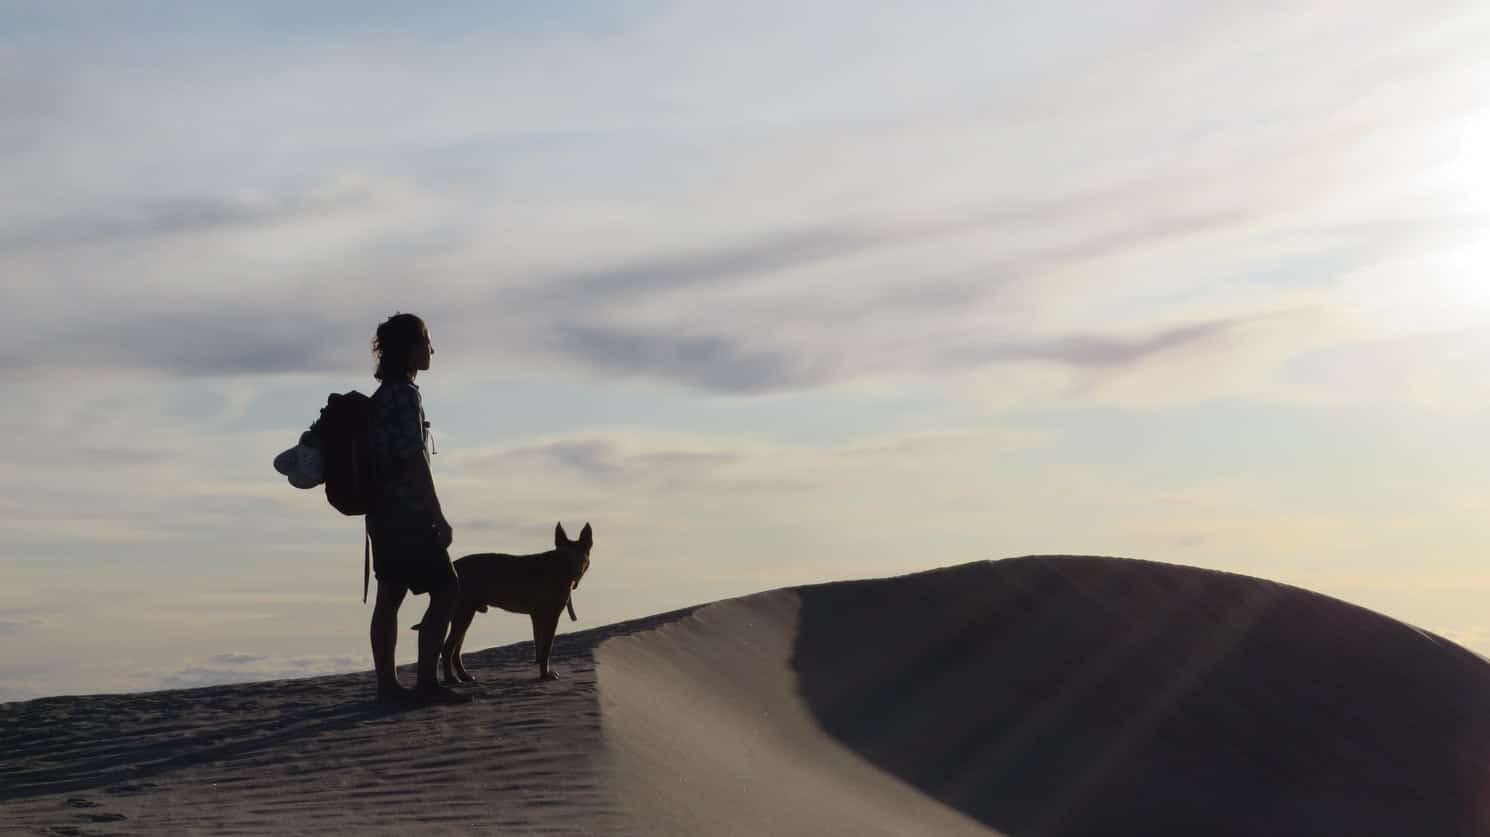 كلبك يتحدى صعاب الطبيعة ويؤنسك في هذه الصحراء